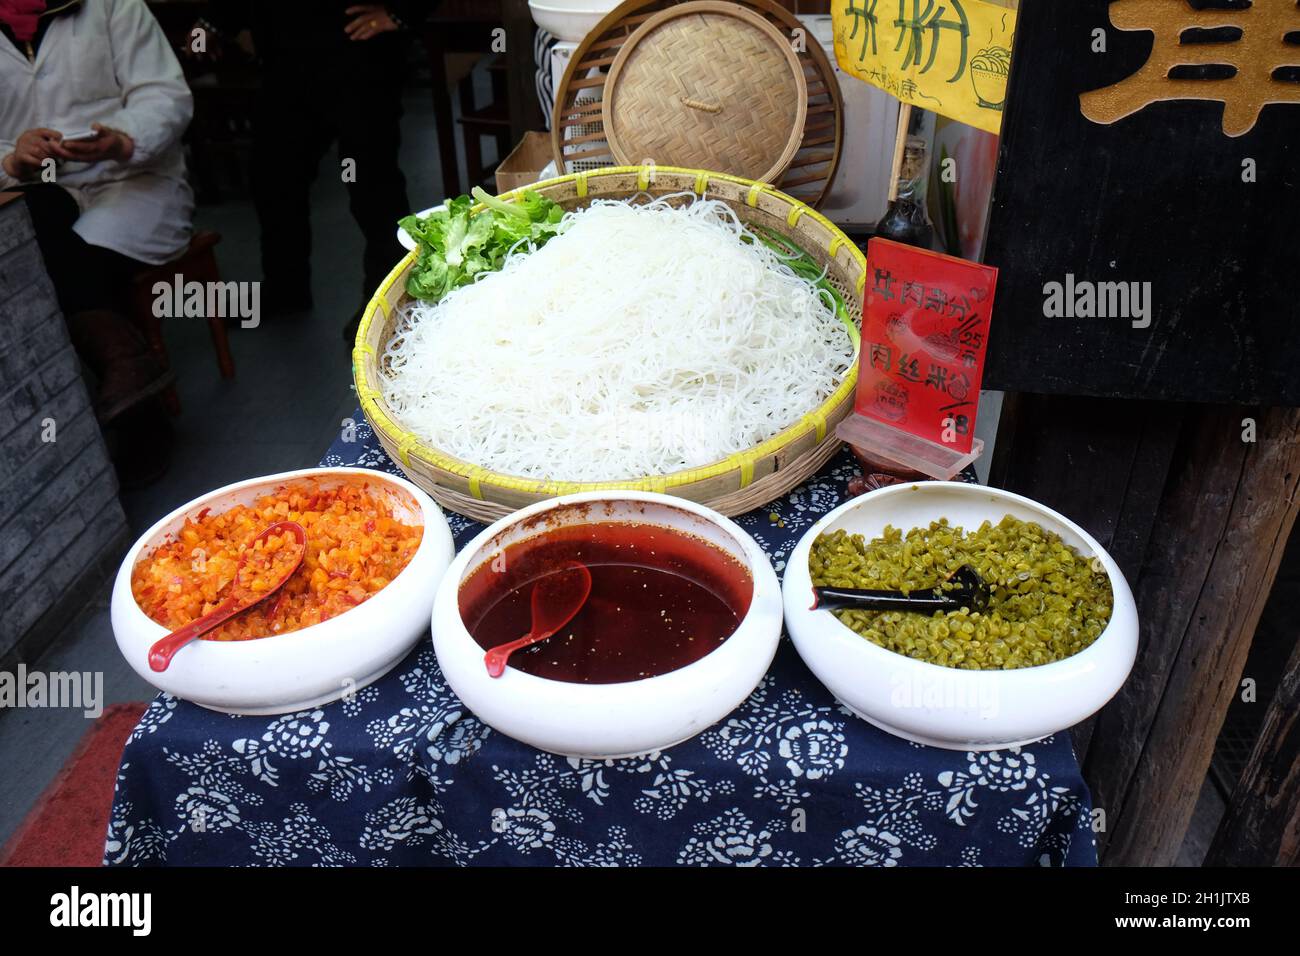 La nourriture asiatique servi sur table en bois blanc, vue du dessus. La  cuisine vietnamienne et chinoise Photo Stock - Alamy